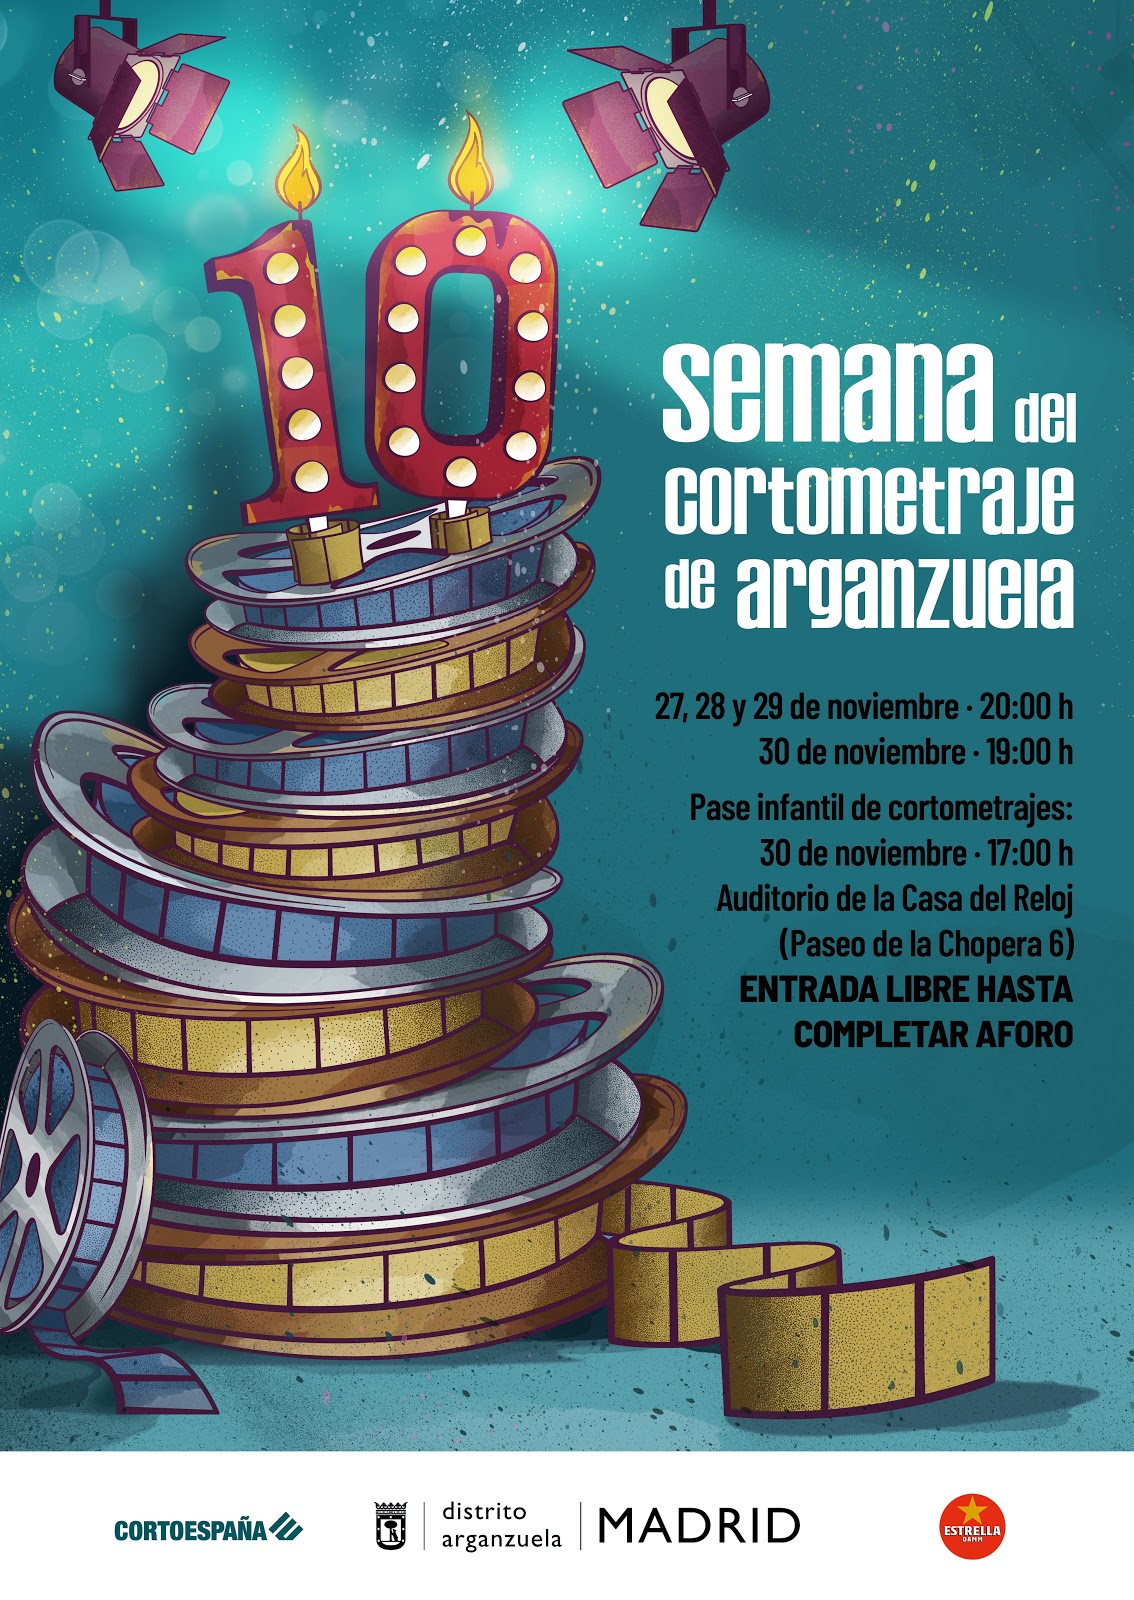 La Semana del cortometraje de Arganzuela celebra su décimo aniversario con una selección de altura